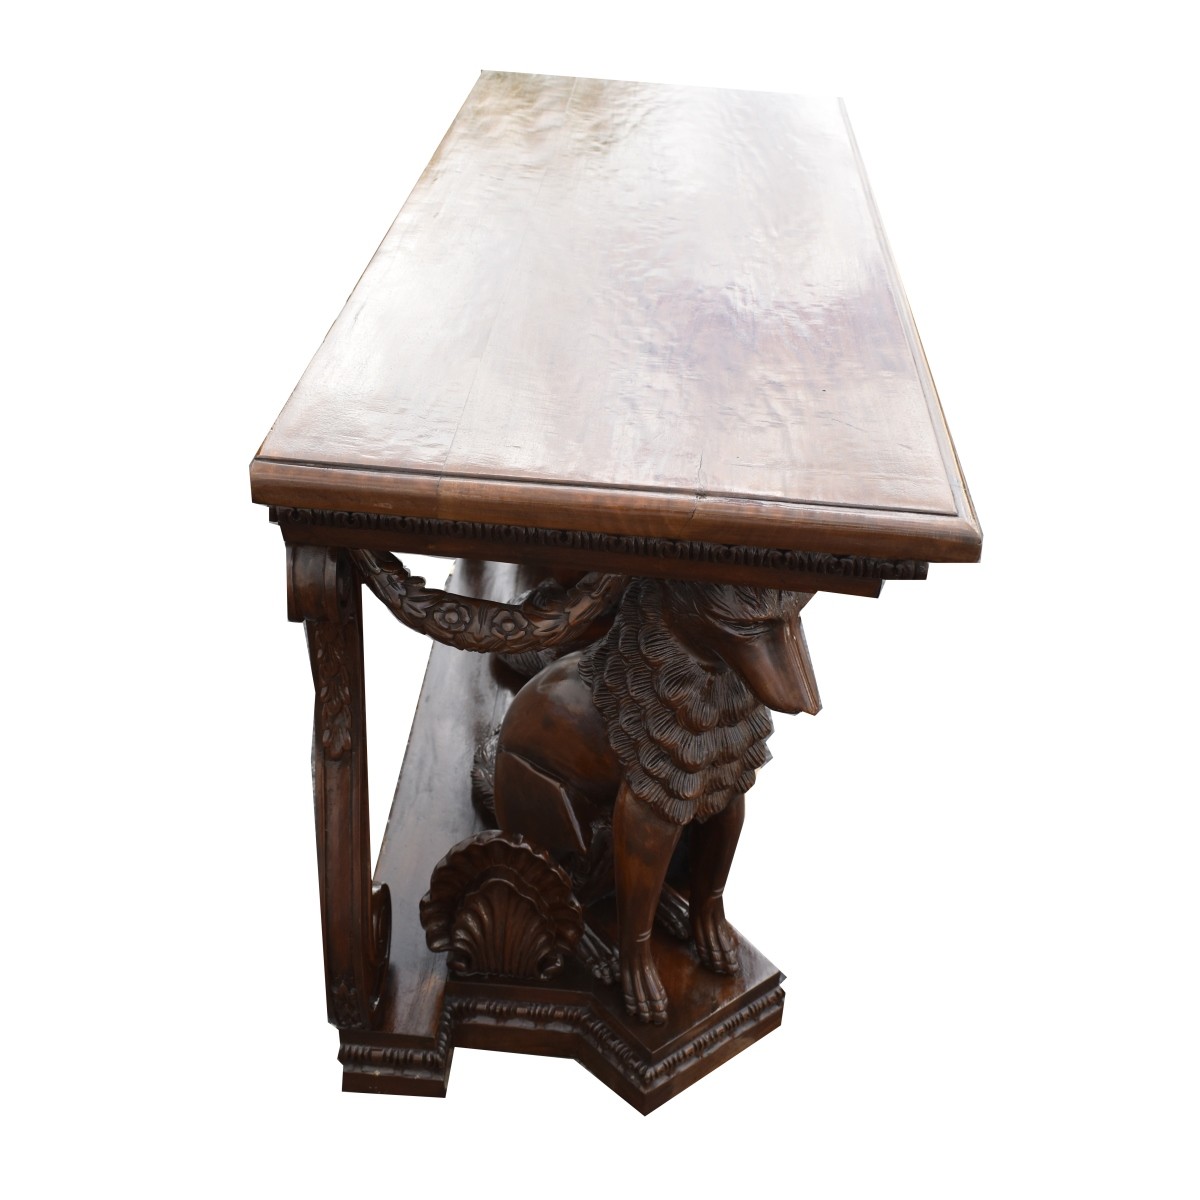 Antique Italian Renaissance Revival Console Table